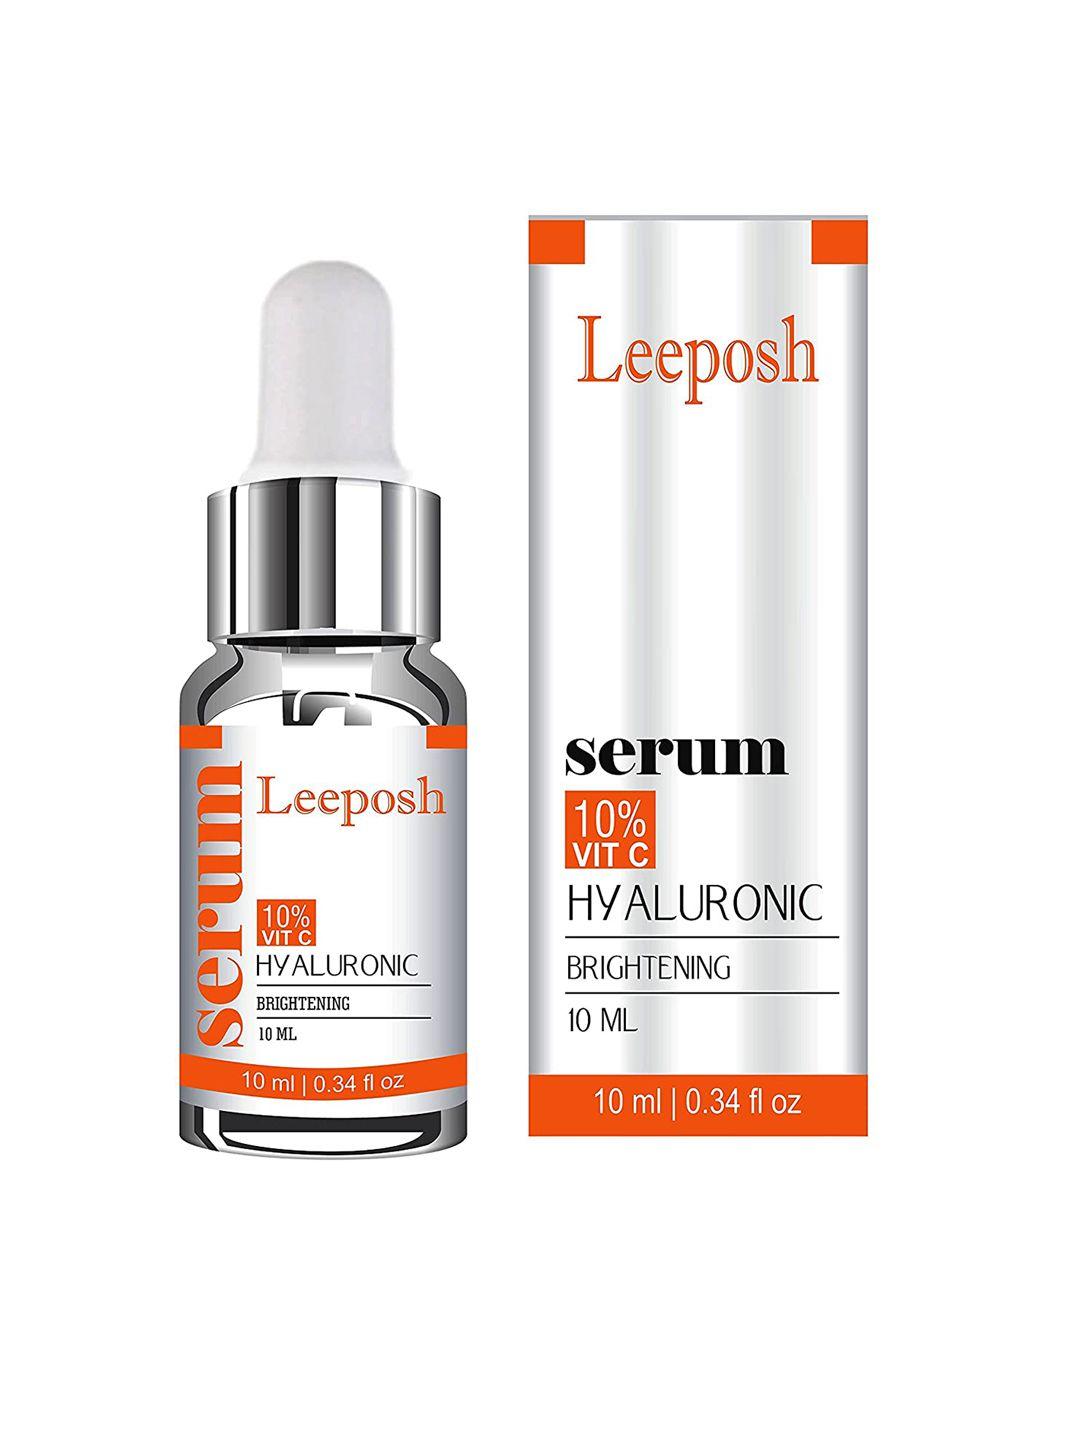 leeposh 10% vitamin c & hyaluronic brightening serum - 10 ml